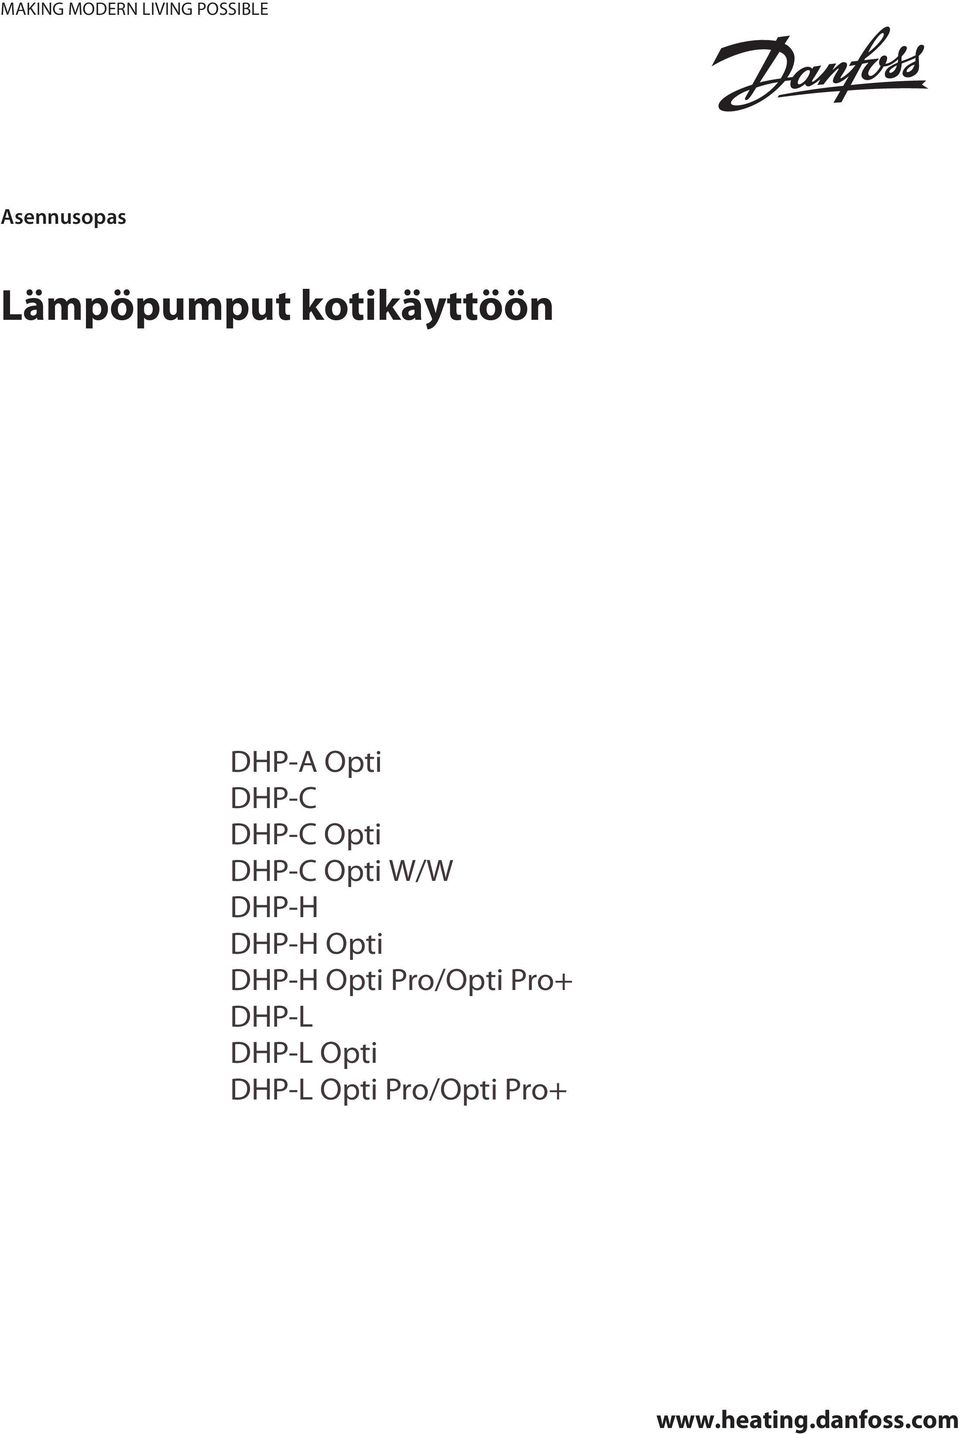 DHP-H Opti DHP-H Opti Pro/Opti Pro+ DHP-L DHP-L